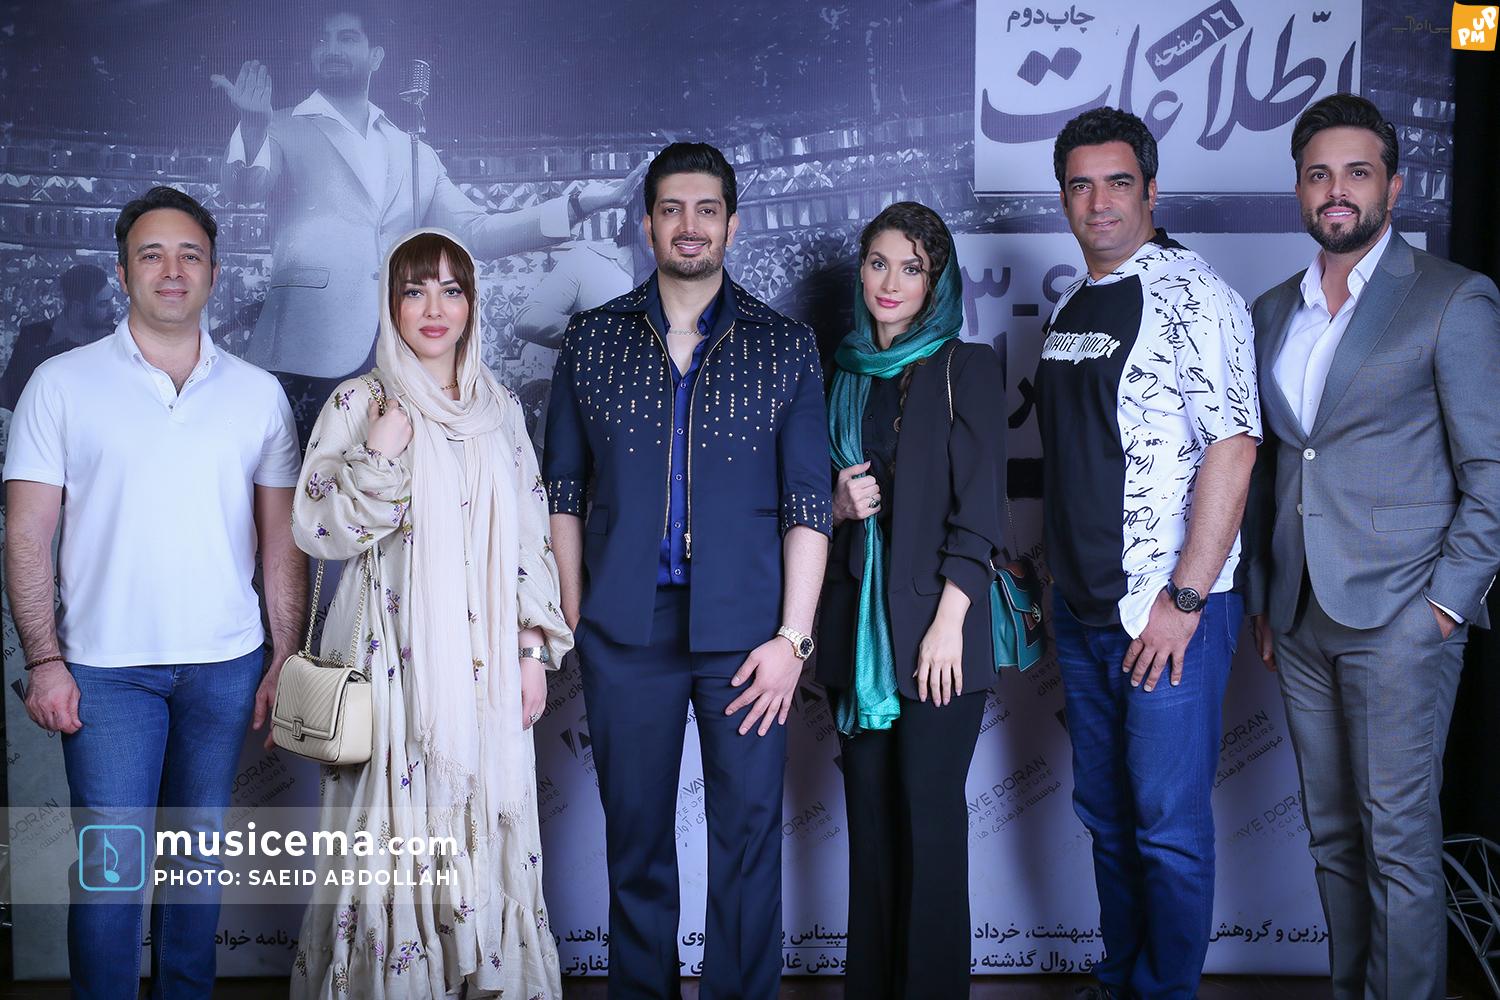 جمع هنرمندان معروف از جمله لیلا اوتادی در کنسرت فرزاد فرزین/عکس